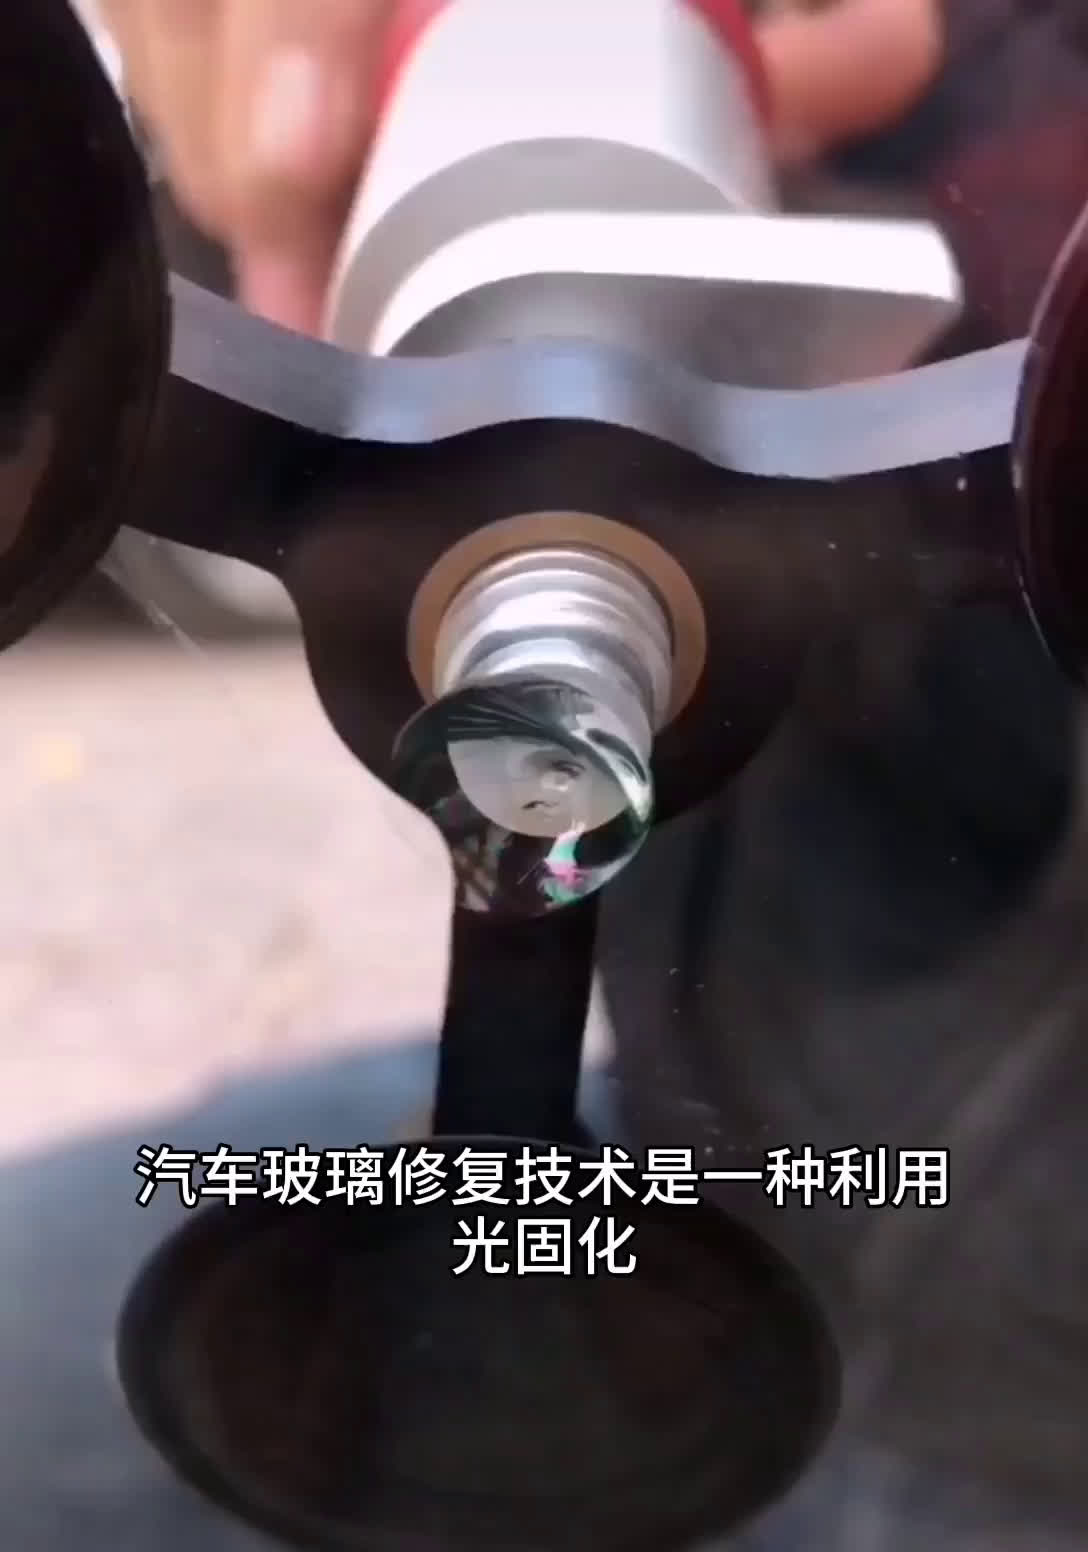 北京圣手汽车装饰服务·凹陷修复